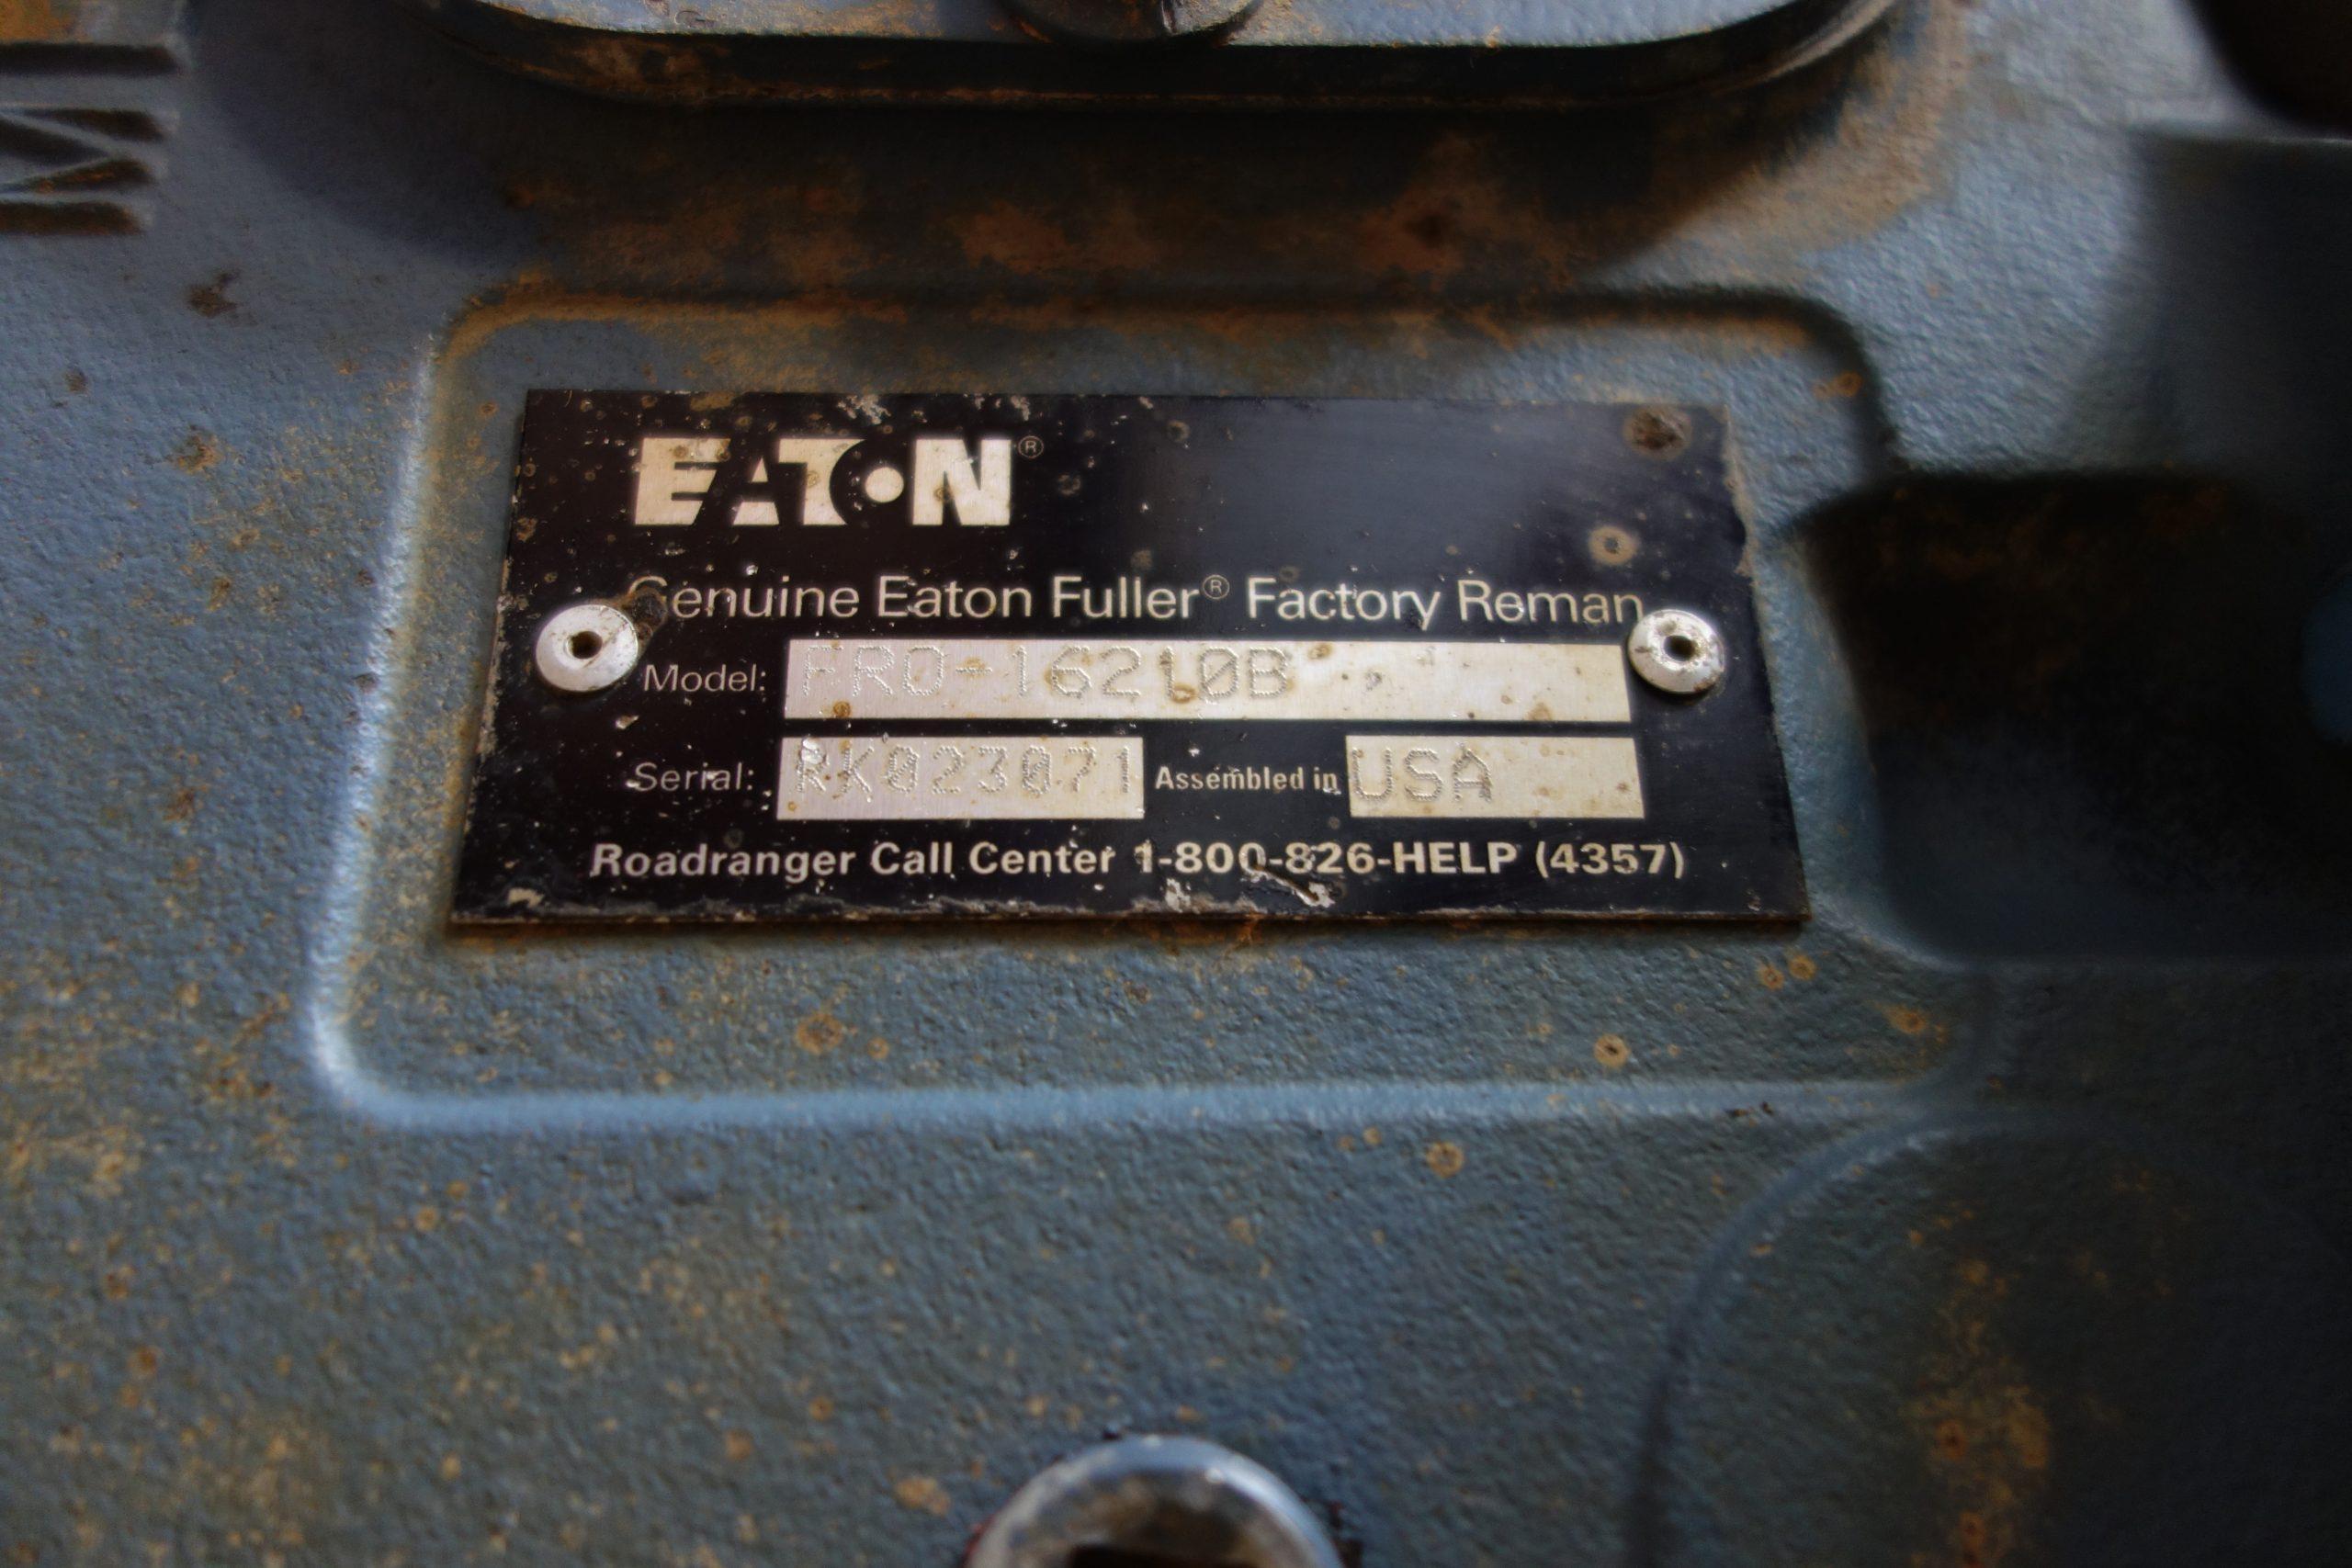 Eaton roadranger warranty